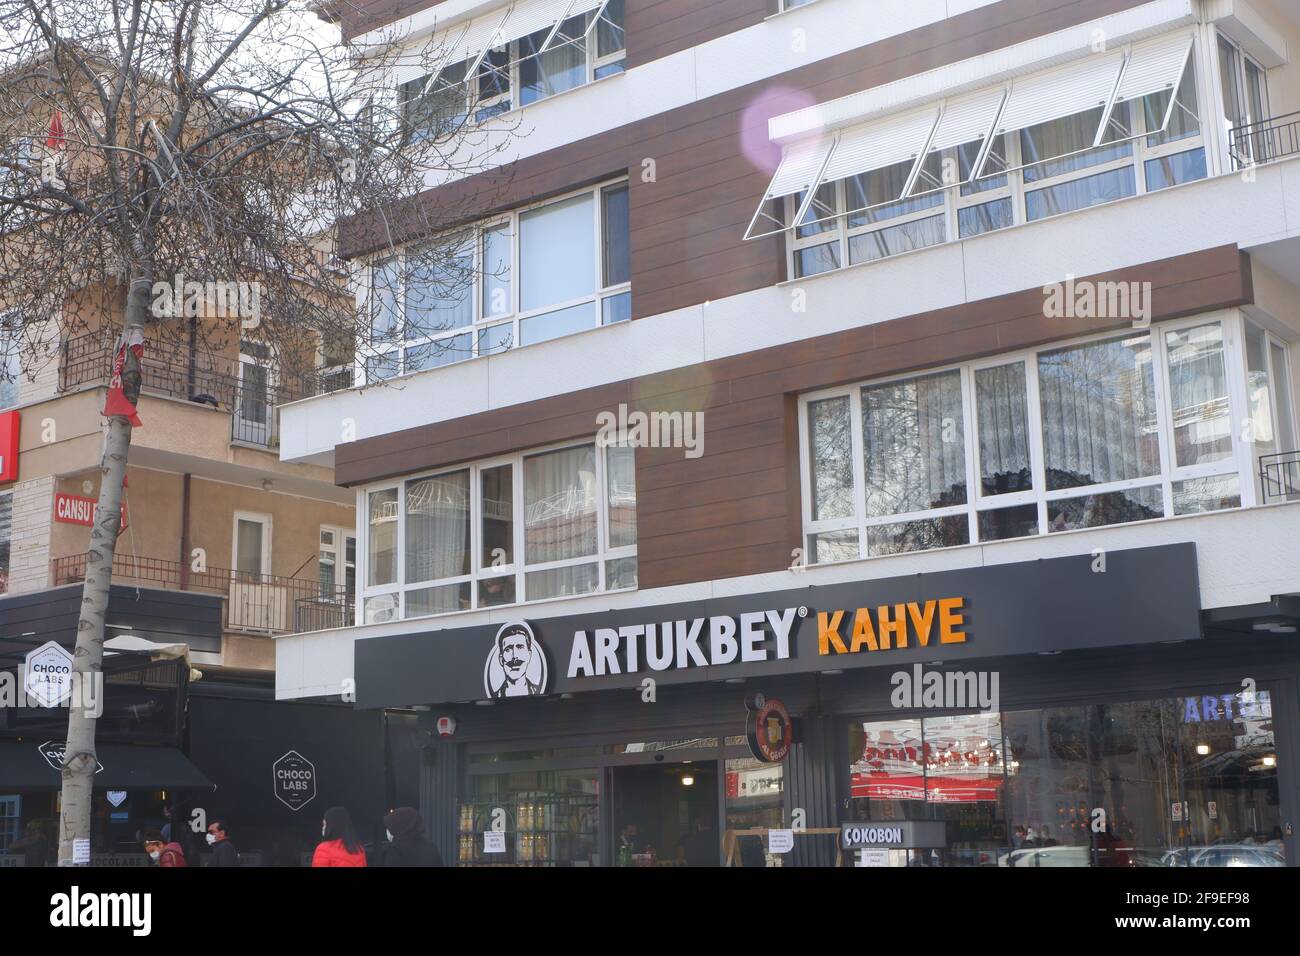 Tienda de una marca local turca de café y fruta seca; 'Artukbey Kahve' en Bacelievler Cankaya Ankara Foto de stock